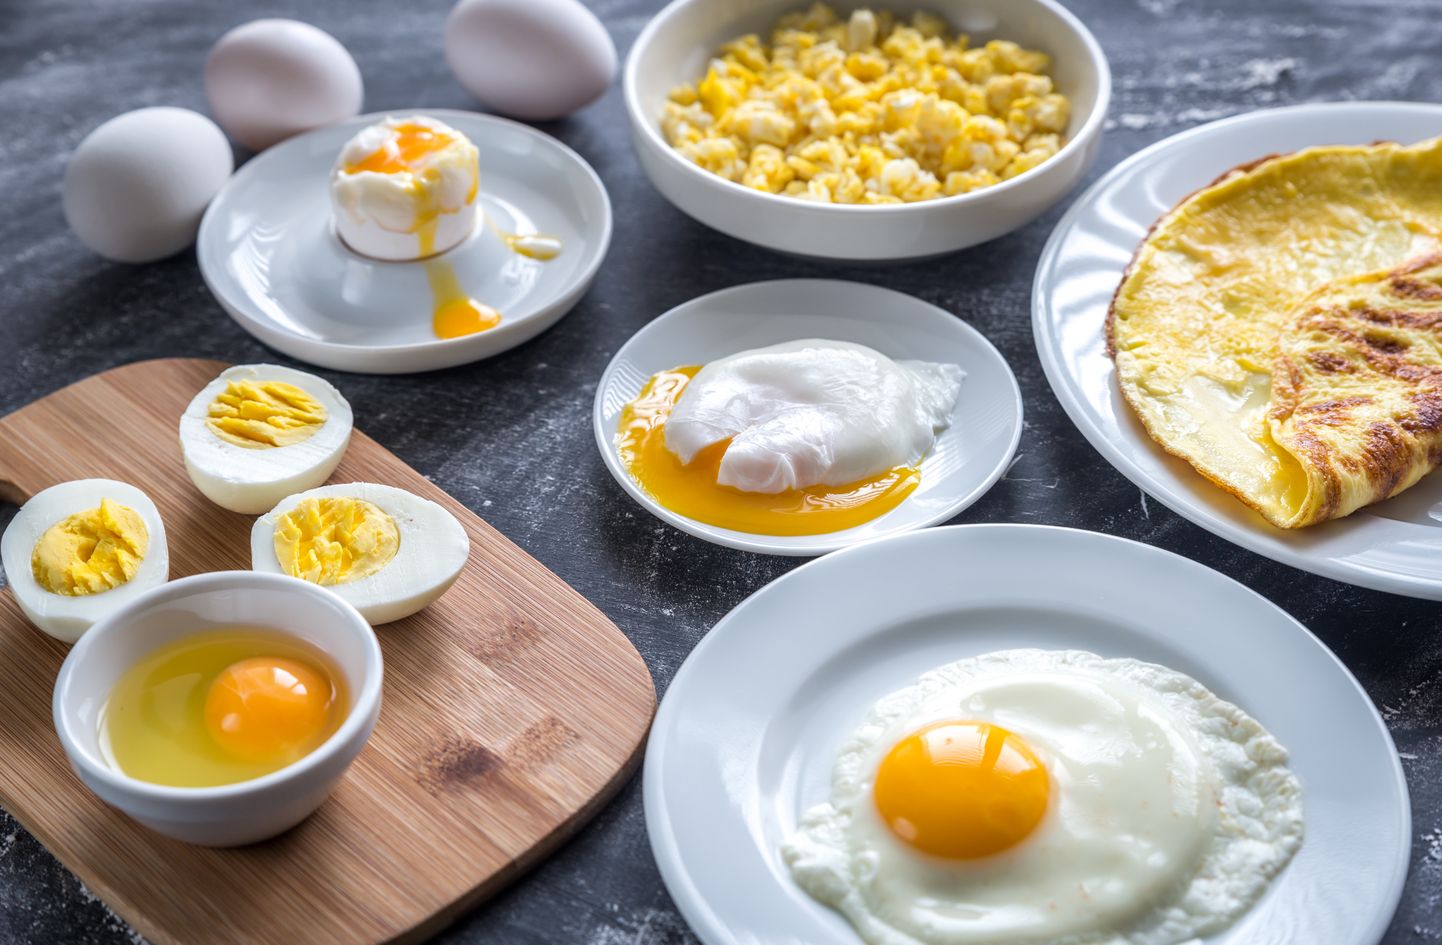 Hommikusöök peab sisaldama valguallikat, näiteks muna. Munaroogade valik on külluslik.